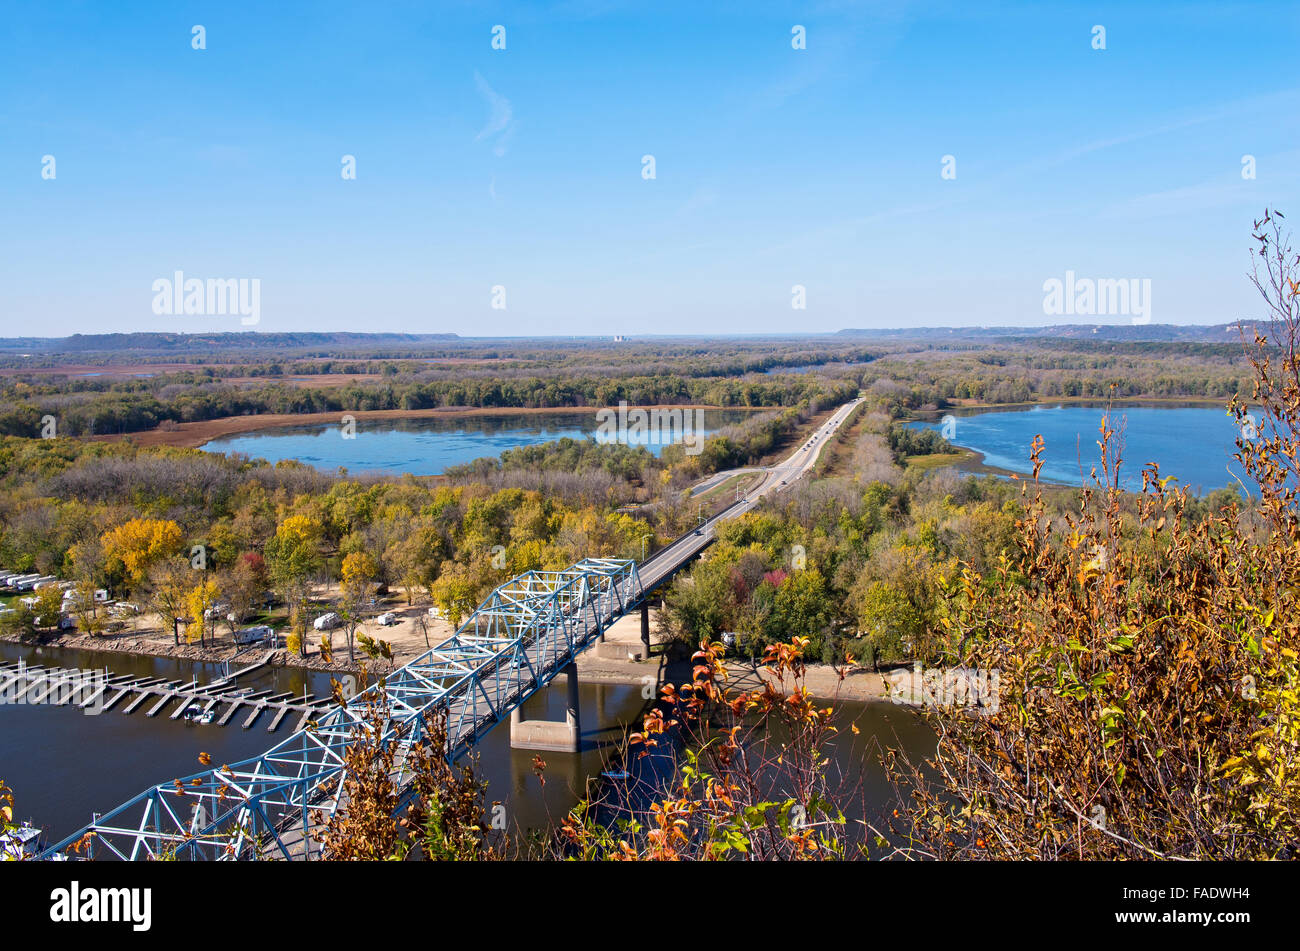 Luftaufnahme der Brücke der Autobahn 63 Kreuzung Mississippi Fluß und Backwaters in Wisconsin aus Scheune in Red bluff Flügel minnesota Stockfoto